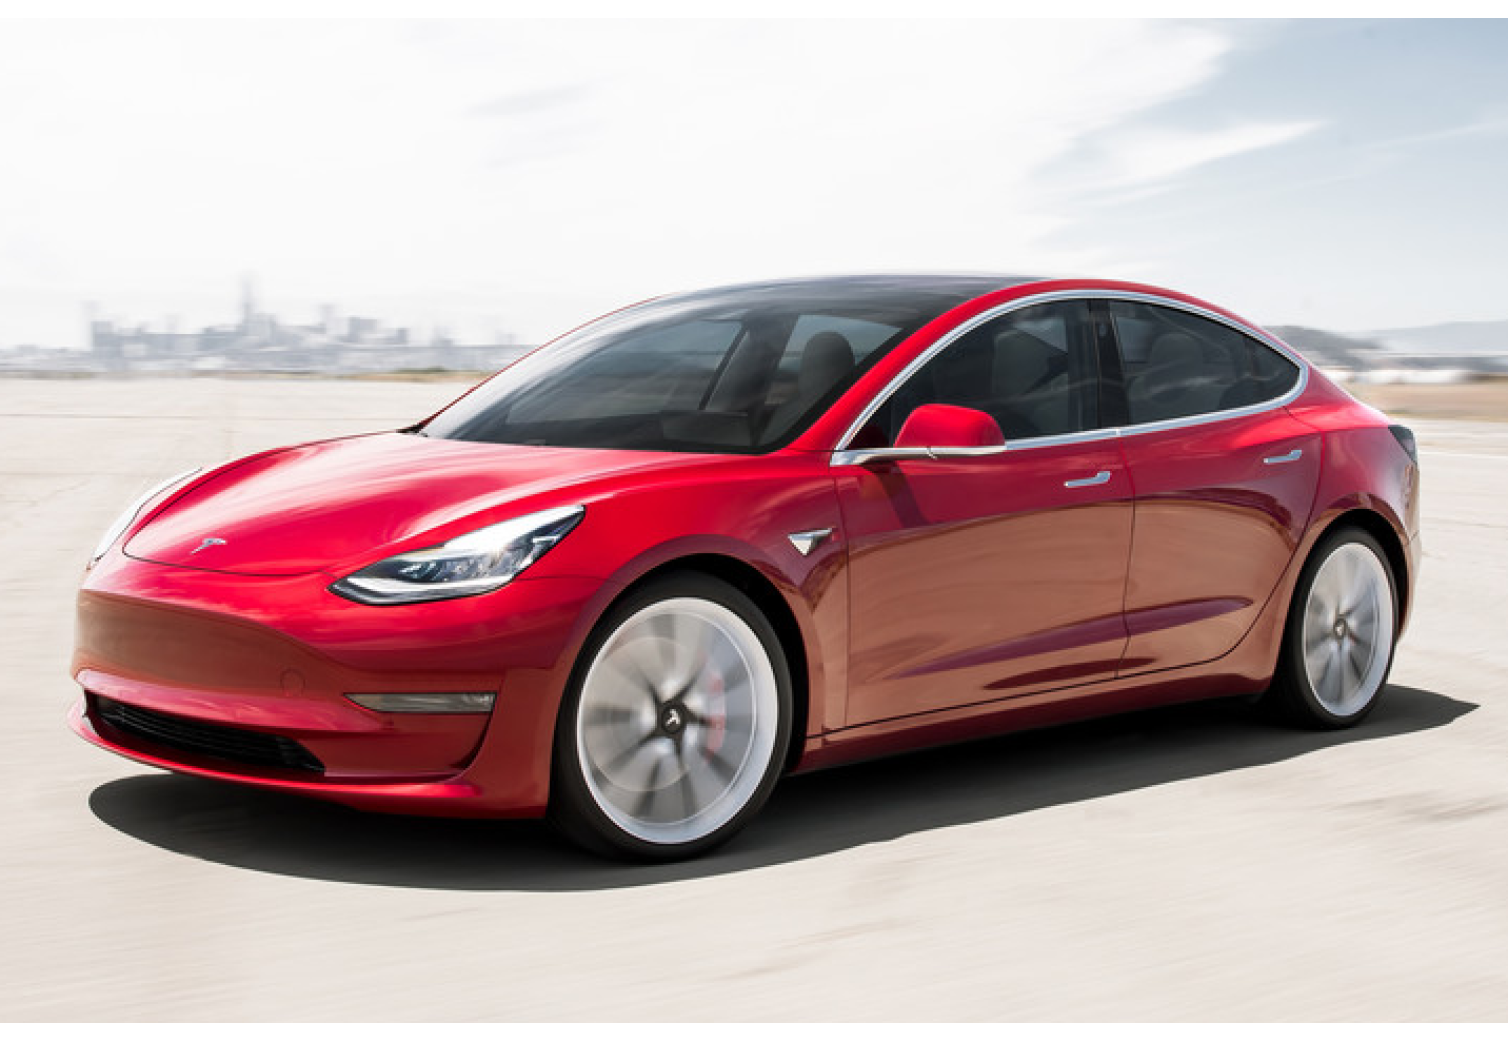 Caoutchouc Tapis pour Tesla Model 3 Type 3